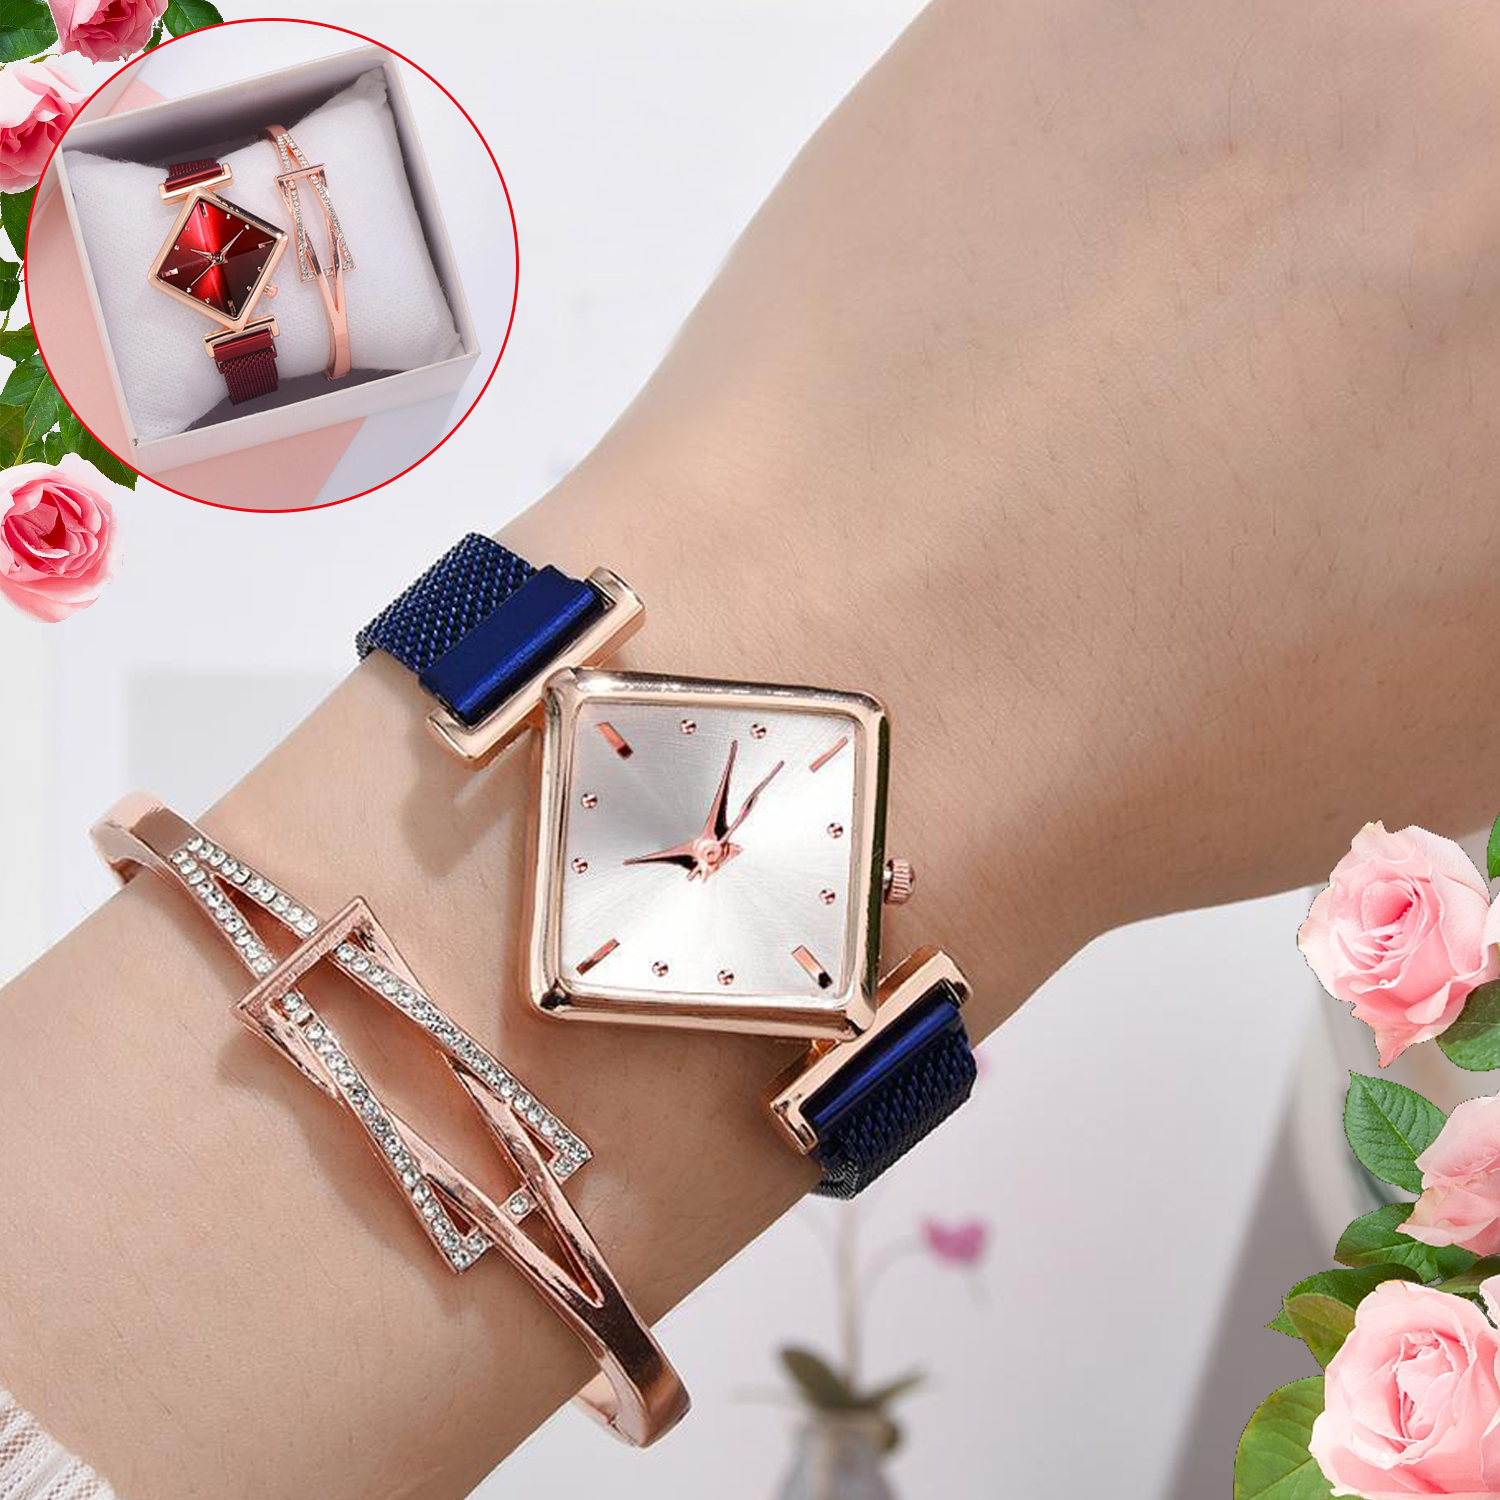 Reloj cuadrado para mujer, de lujo, con hebilla magnética de cuarzo, relojes de Color degradado, reloj de pulsera de moda para reloj de regalo